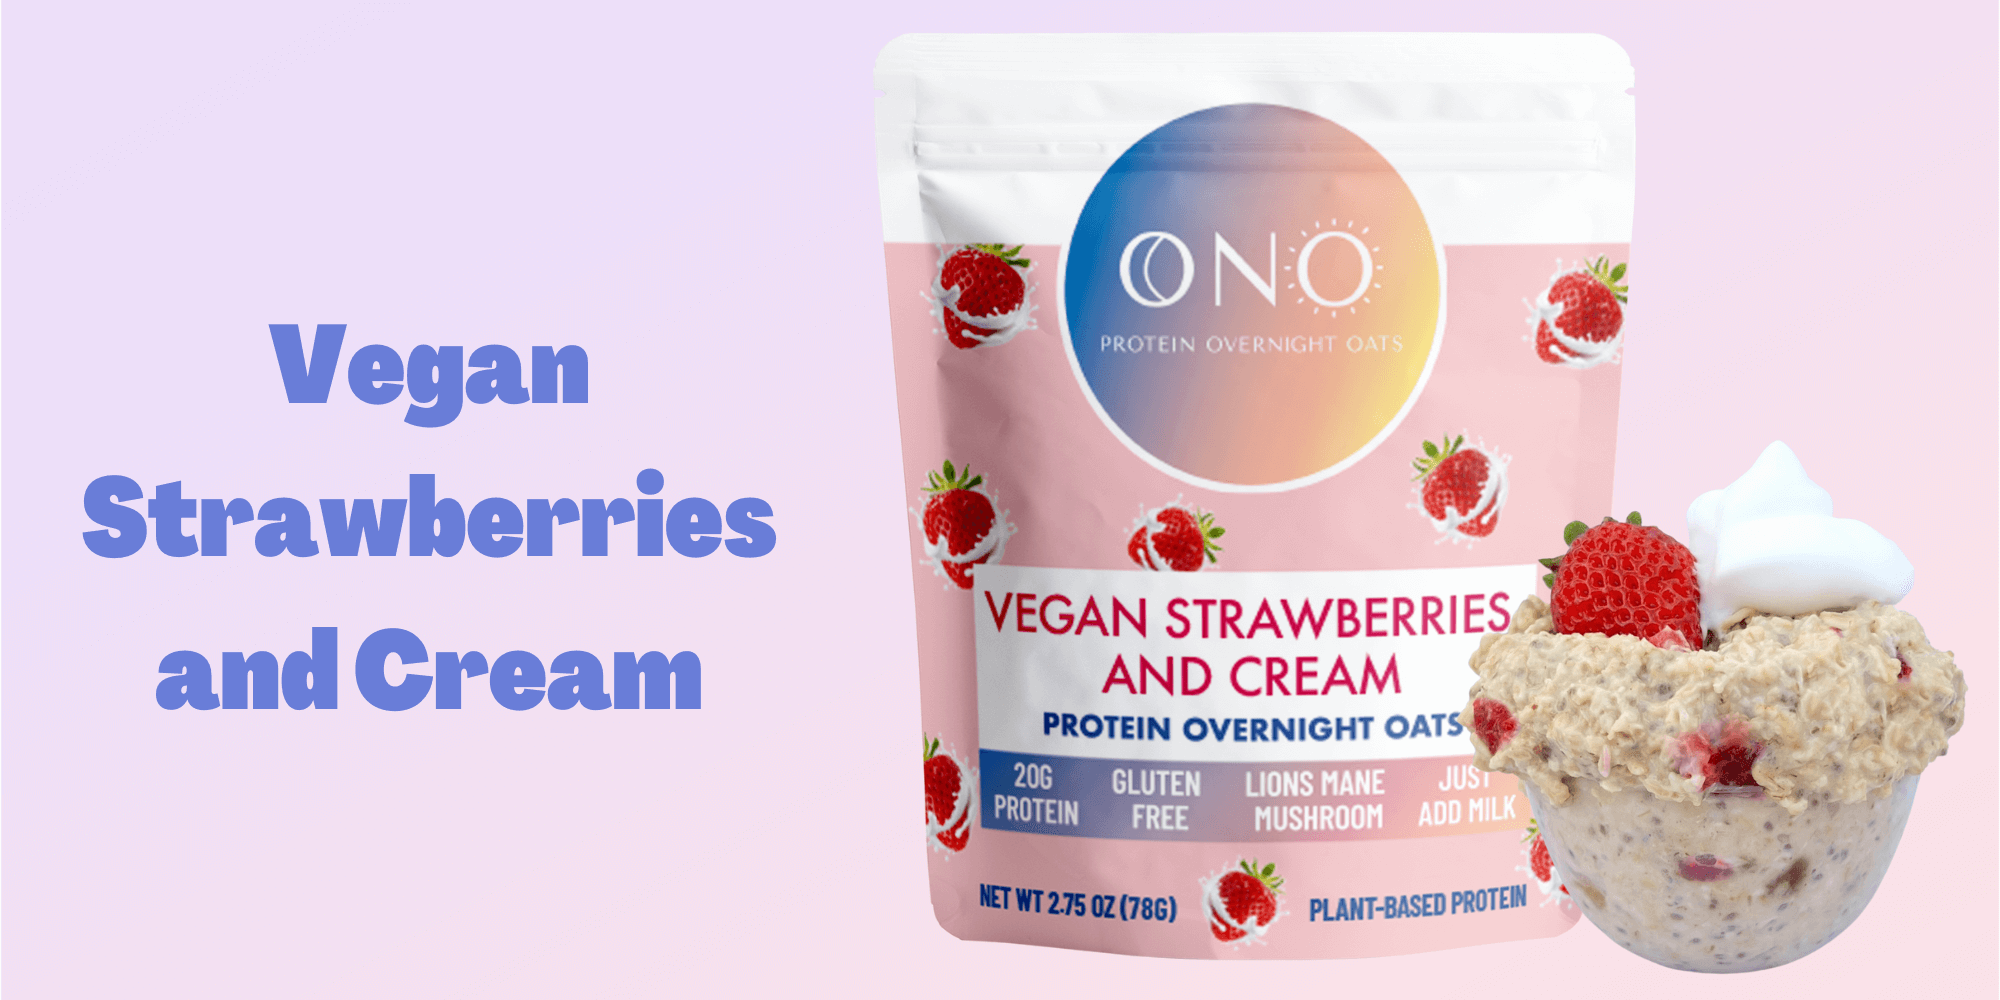 Vegan Strawberries and Cream